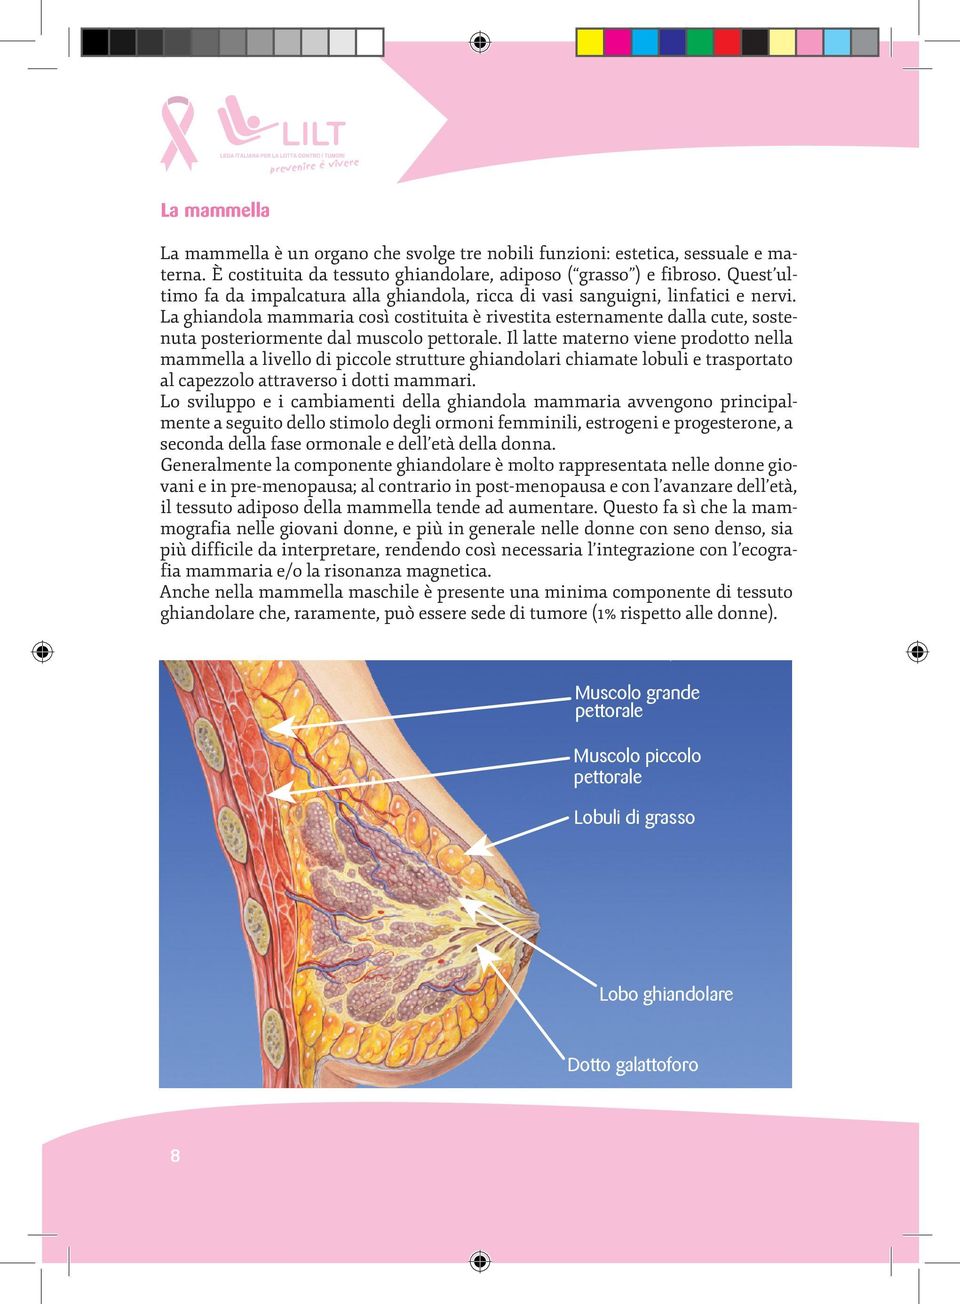 La ghiandola mammaria così costituita è rivestita esternamente dalla cute, sostenuta posteriormente dal muscolo pettorale.